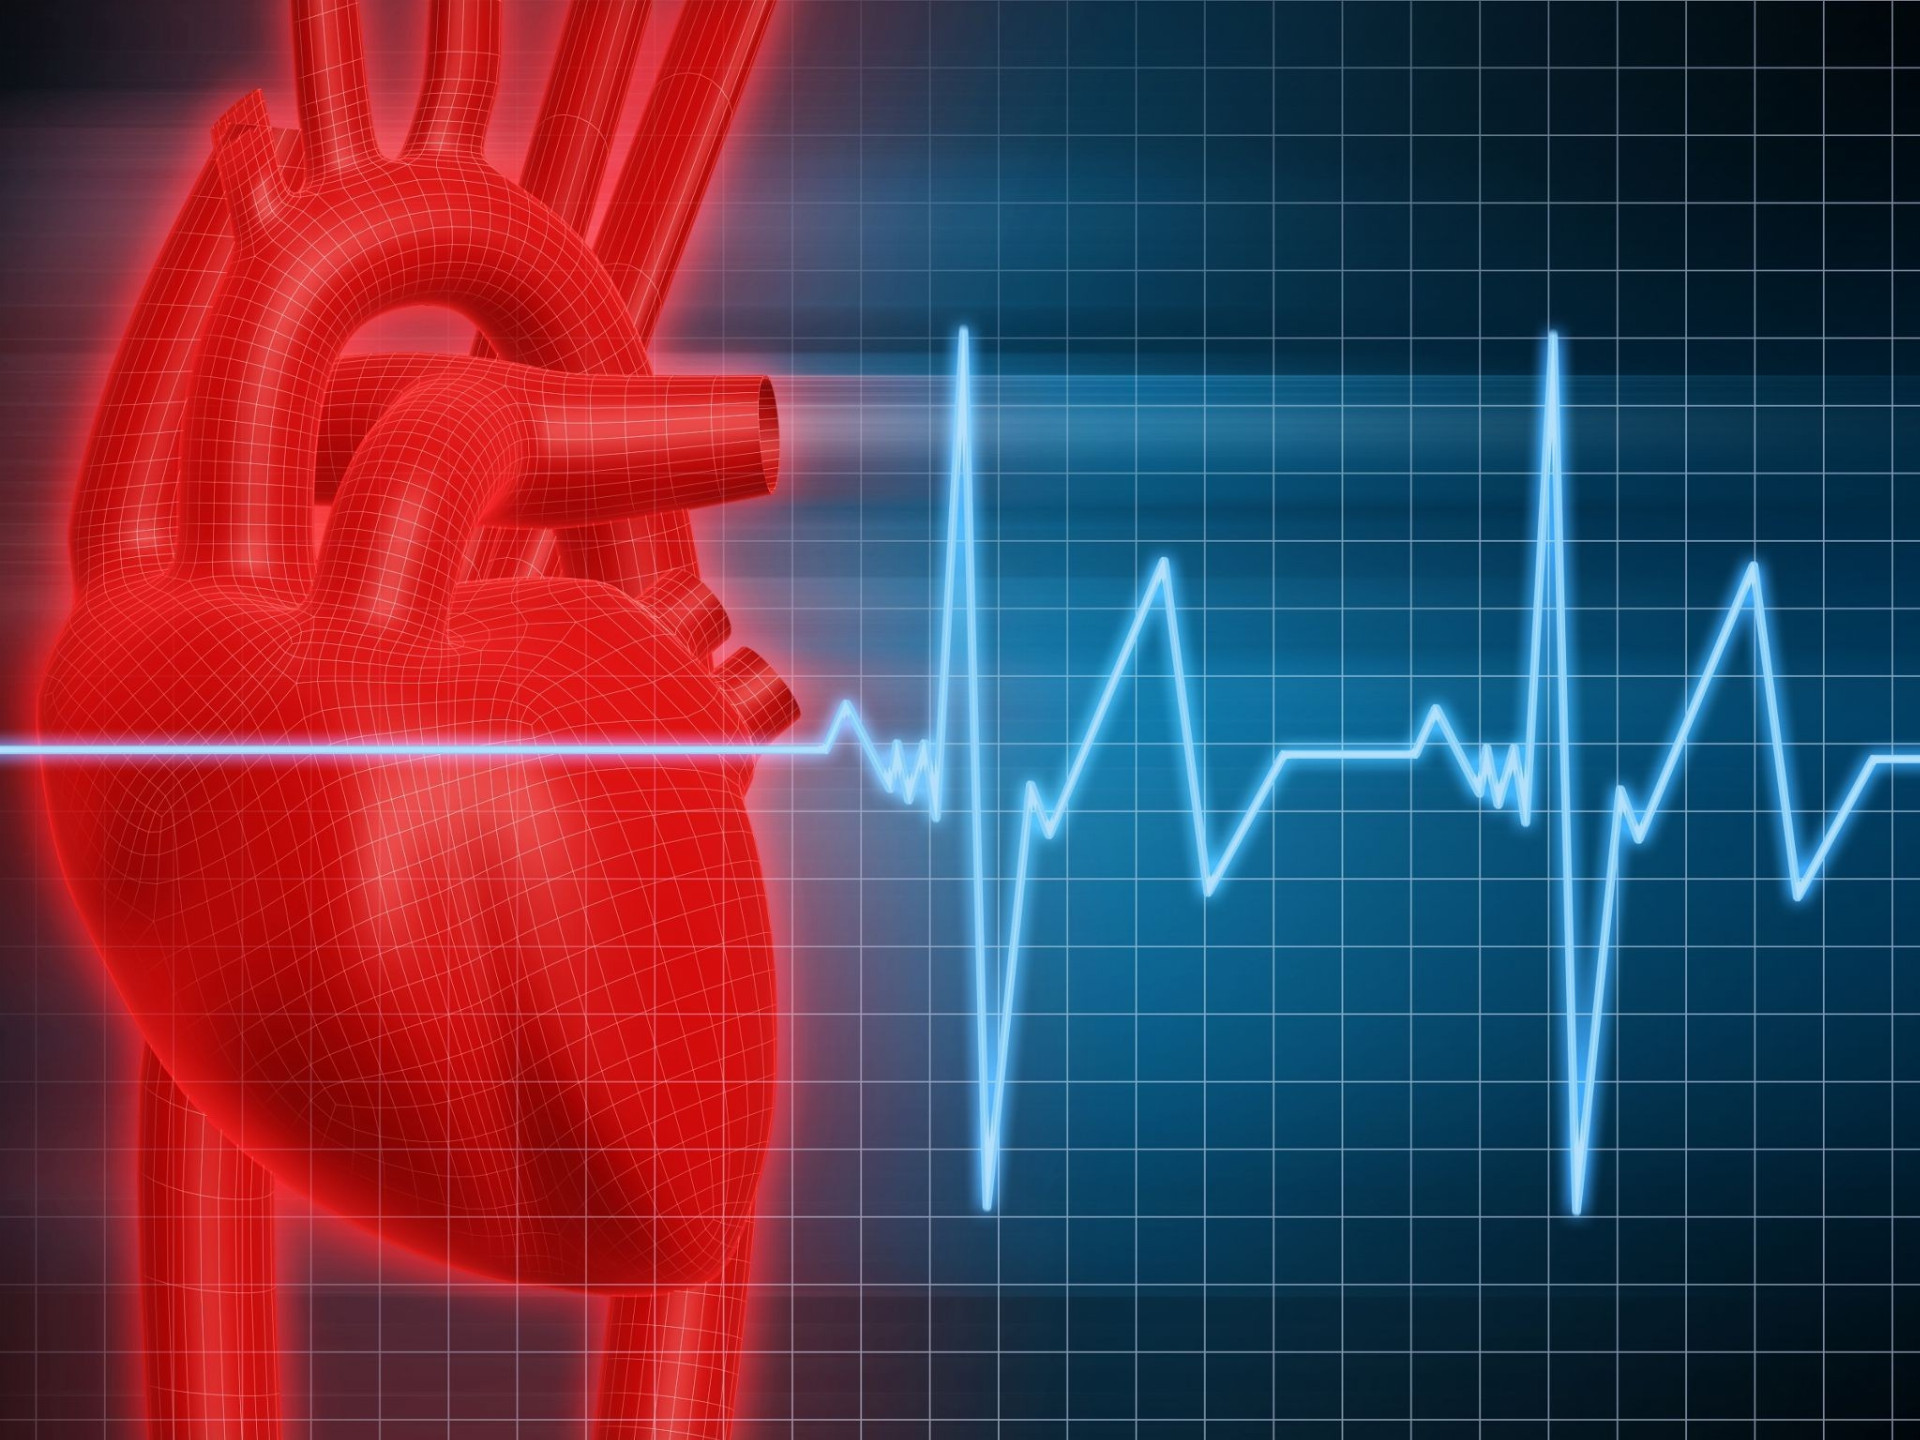 Infarkt
Pri infarkte sa množstvo krvi vtekajúcej do srdcového svalu výrazne obmedzí alebo dokonca až zastaví. Môže to spôsobiť tepna upchatá krvnou zrazeninou, alebo keď sa kŕčovito stiahne. 

Ak sa prívod krvi a kyslíka preruší na dlhšie ako na pár minút, bunky srdcového svalu sa trvalo poškodia a začnú odumierať. Niektoré srdcové príhody vznikajú veľmi dramaticky – sú náhle a prudké, človek pri nich lapá po dychu, s rukou pritisnutou na srdce padá na zem. Oveľa častejšie sa však infarkt začína pomaly, nevýraznou bolesťou či nevoľnosťou. K príznakom patrí nepríjemný pocit v oblasti hrudníka, ktorý trvá viac minút. Možno ho pociťovať ako nepríjemný tlak, zvieranie, pálenie, tupú bolesť na hrudi alebo pocit plnosti. Bolesti či nepríjemný pocit môžu však vyžarovať aj do hornej polovice tela, najčastejšie do ľavej ruky, do chrbta, šije, čeľuste alebo aj do oblasti žalúdka. Ďalším varovaním je skrátenie dychu alebo dýchavičnosť, priebeh akútneho infarktu môže sprevádzať studený pot, žalúdočná nevoľnosť, strata rovnováhy alebo až bezvedomie. Ženy pri infarkte vo všeobecnosti častejšie ako muži pociťujú bolesť alebo nepríjemný tlak v hrudi. Majú aj častejšiu skúsenosť než muži s niektorými ďalšími bežnými symptómami, čiastočným skrátením dychu, žalúdočnou nevoľnosťou, zvracaním, bolesťou chrbta alebo čeľuste. Na druhej strane ženy s výraznou nadváhou, alebo obezitou, nezriedka nemajú žiadnu bolesť, skôr menšiu nevoľnosť, takže vôbec lekársku pomoc nevyhľadávajú. Ďalšou skupinou chorých sú osoby s cukrovkou, ktoré pri akútnom infarkte myokardu nemusia pociťovať žiadne varovné signály (v dôsledku poškodenia nervových zakončení). Čo robiť? Základom je čím skôr privolať pomoc zdravotníkov. Ak ste s niekým, kto má pravdepodobne príznaky infarktu, očakávajte, že bude situáciu zľahčovať – odmietanie je bežné. Neakceptujte „pokazený žalúdok“ a zavolajte záchranku.